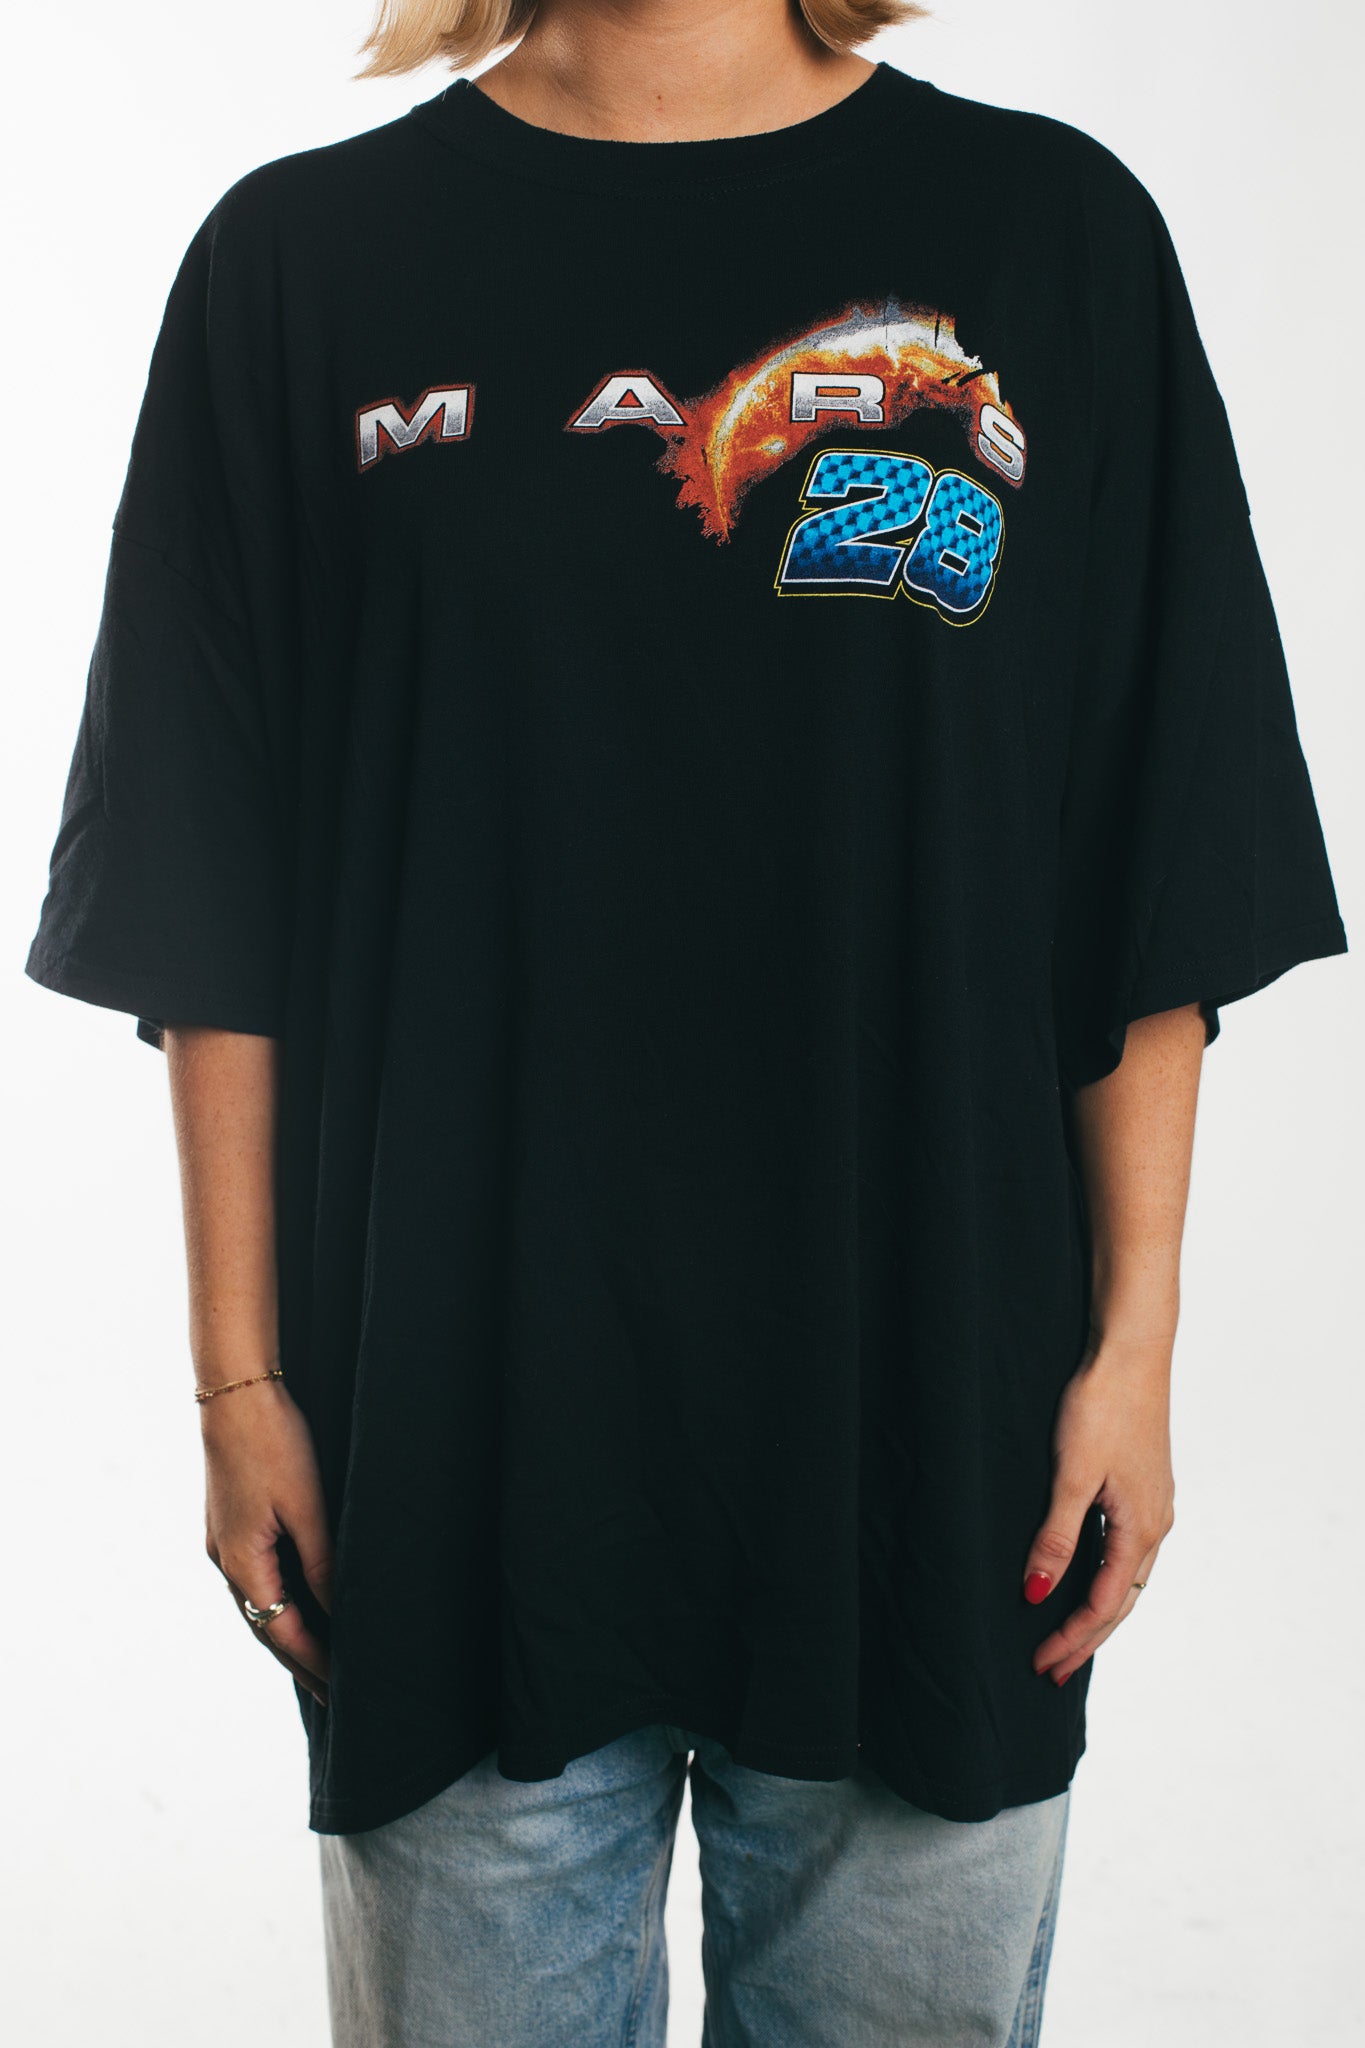 Mars - T-shirt  (XXL)